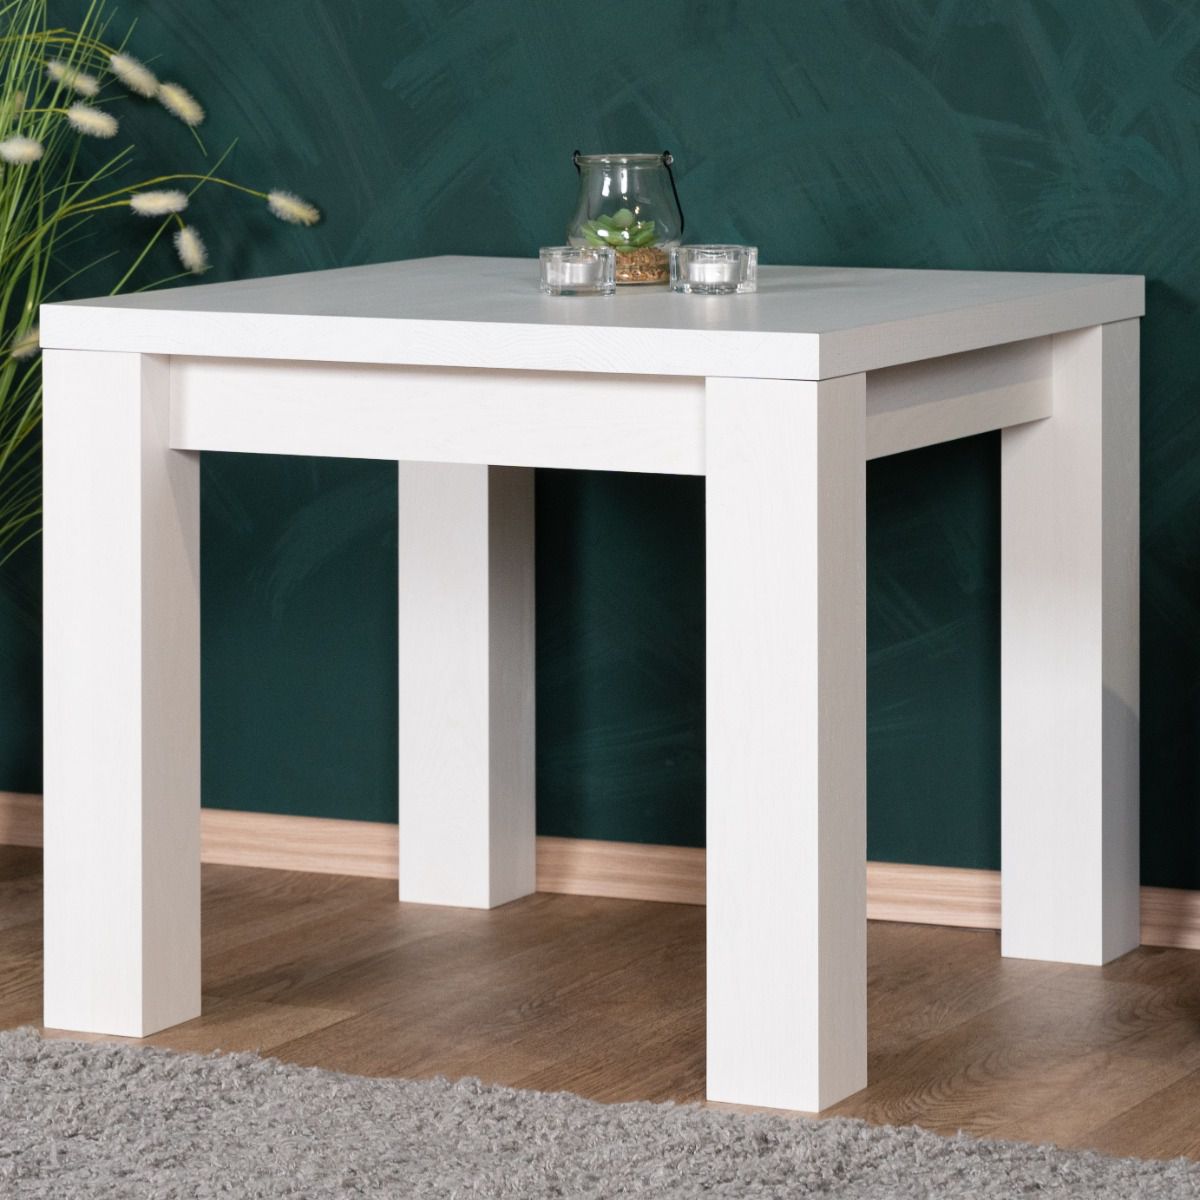 Tavolino bianco in rovere massiccio Pirol 119, 50 x 60 x 60 cm, quadrato, pratico tavolino da salotto, robusto e stabile, lavorazione di alta qualità